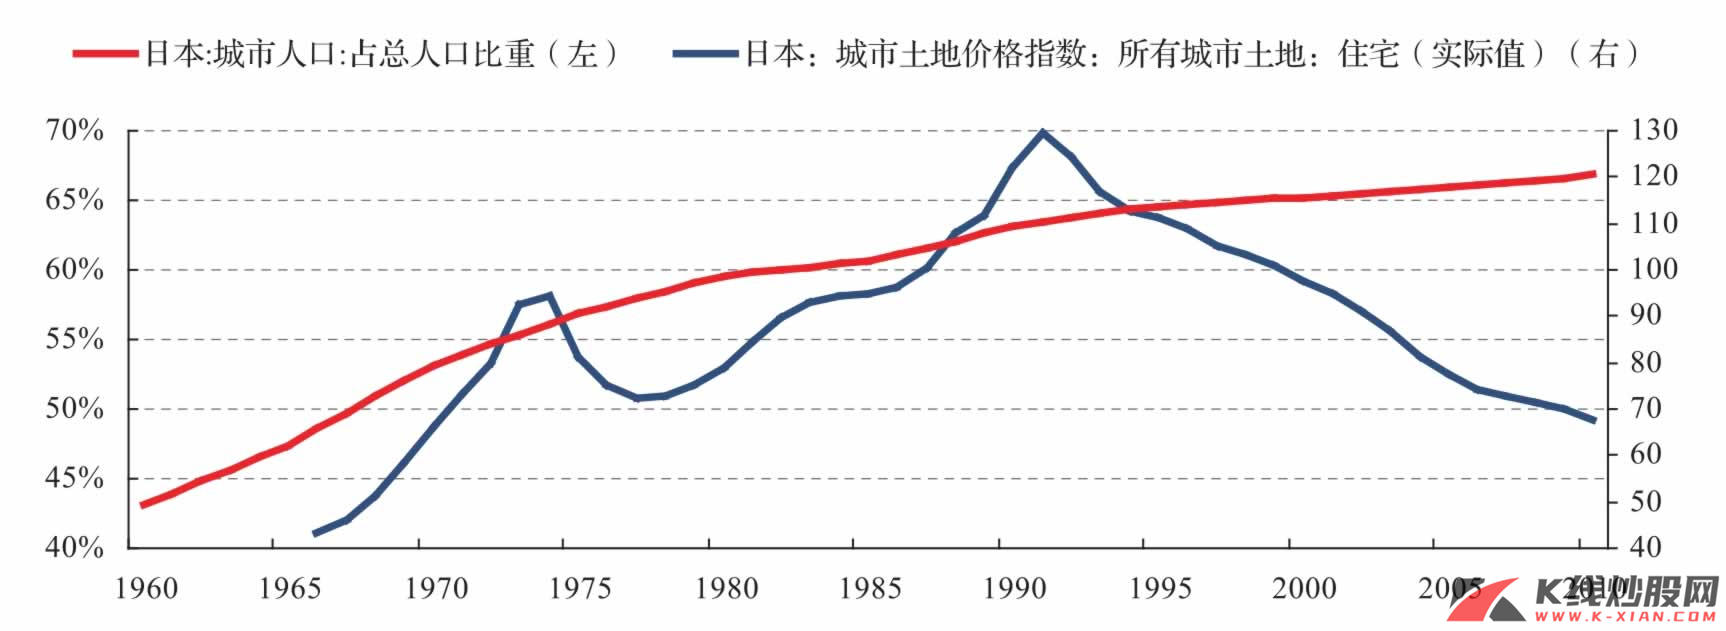 日本城市土地价格指数与城市化率